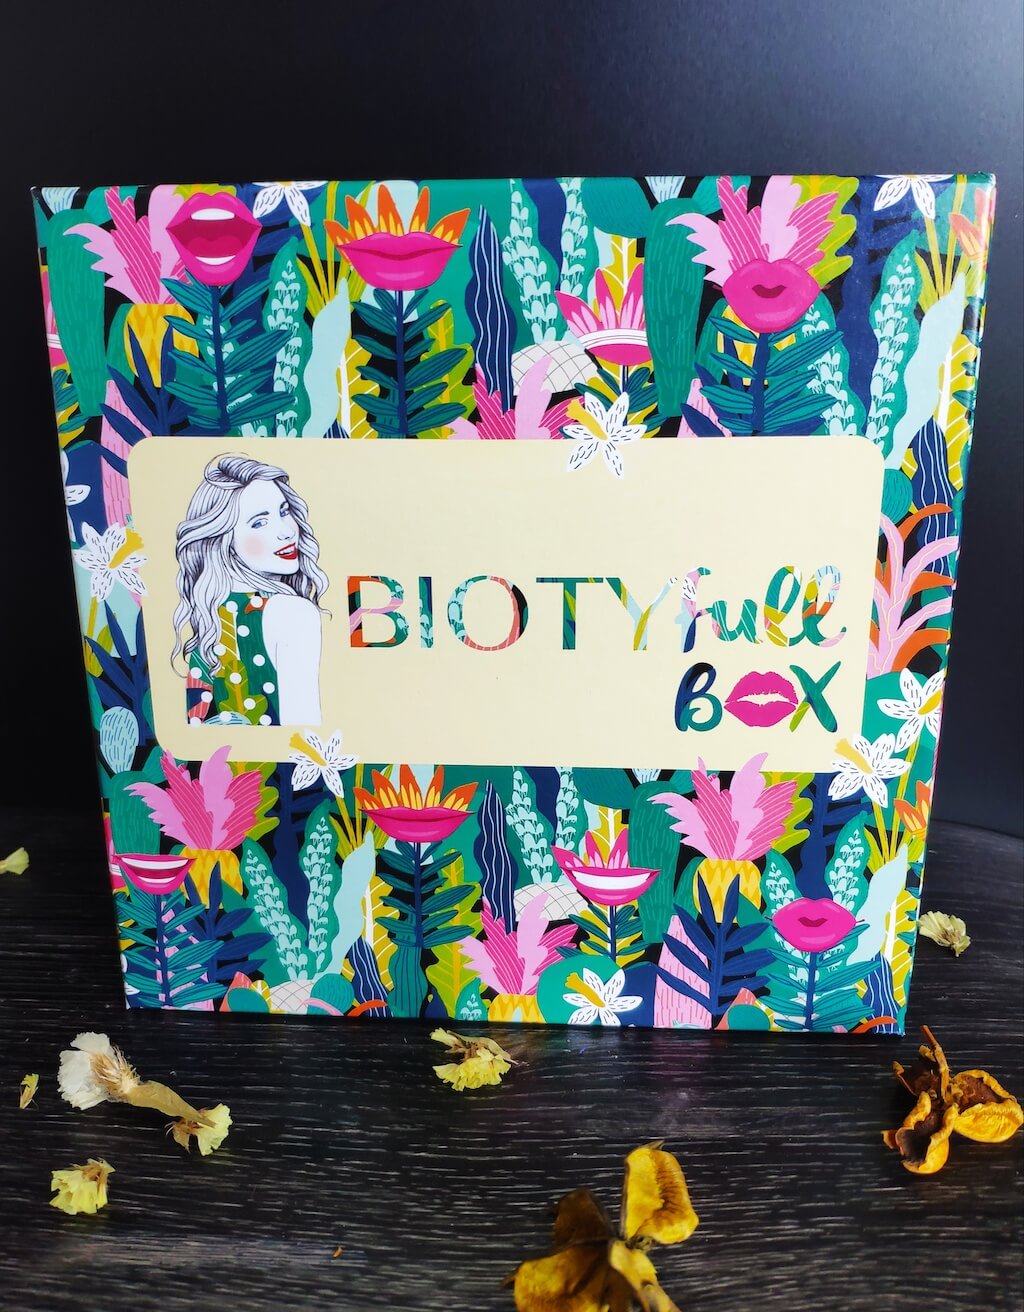 biotyfull-box-sourire-septembre-2019-avis-contenu-spoiler